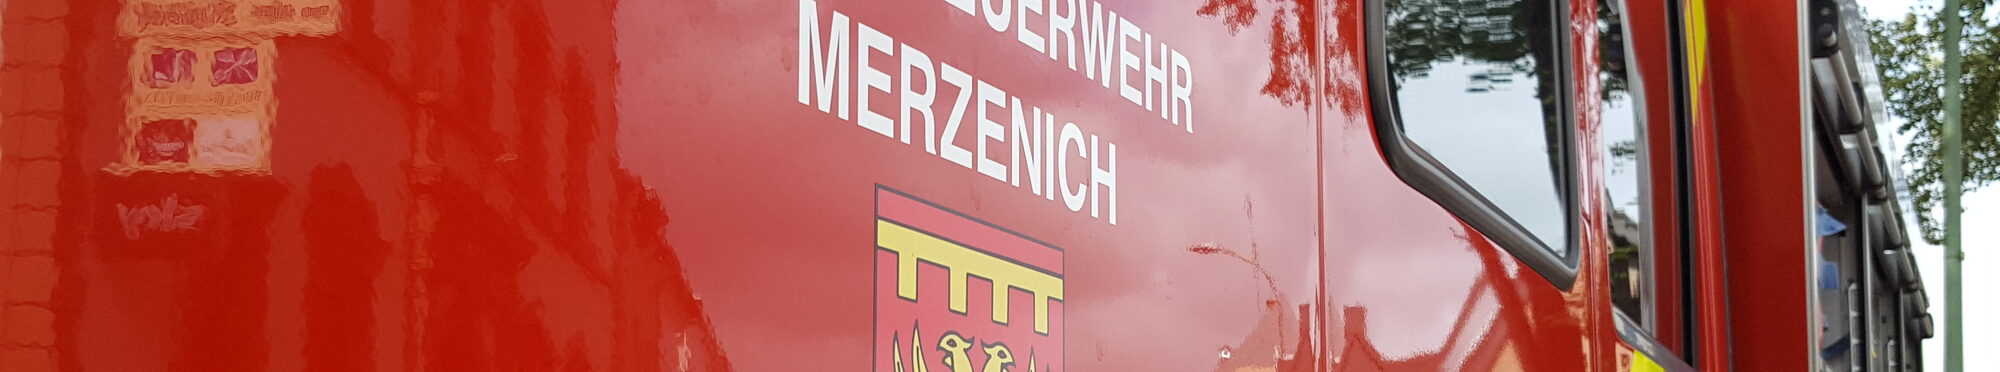 Löschgruppe Merzenich